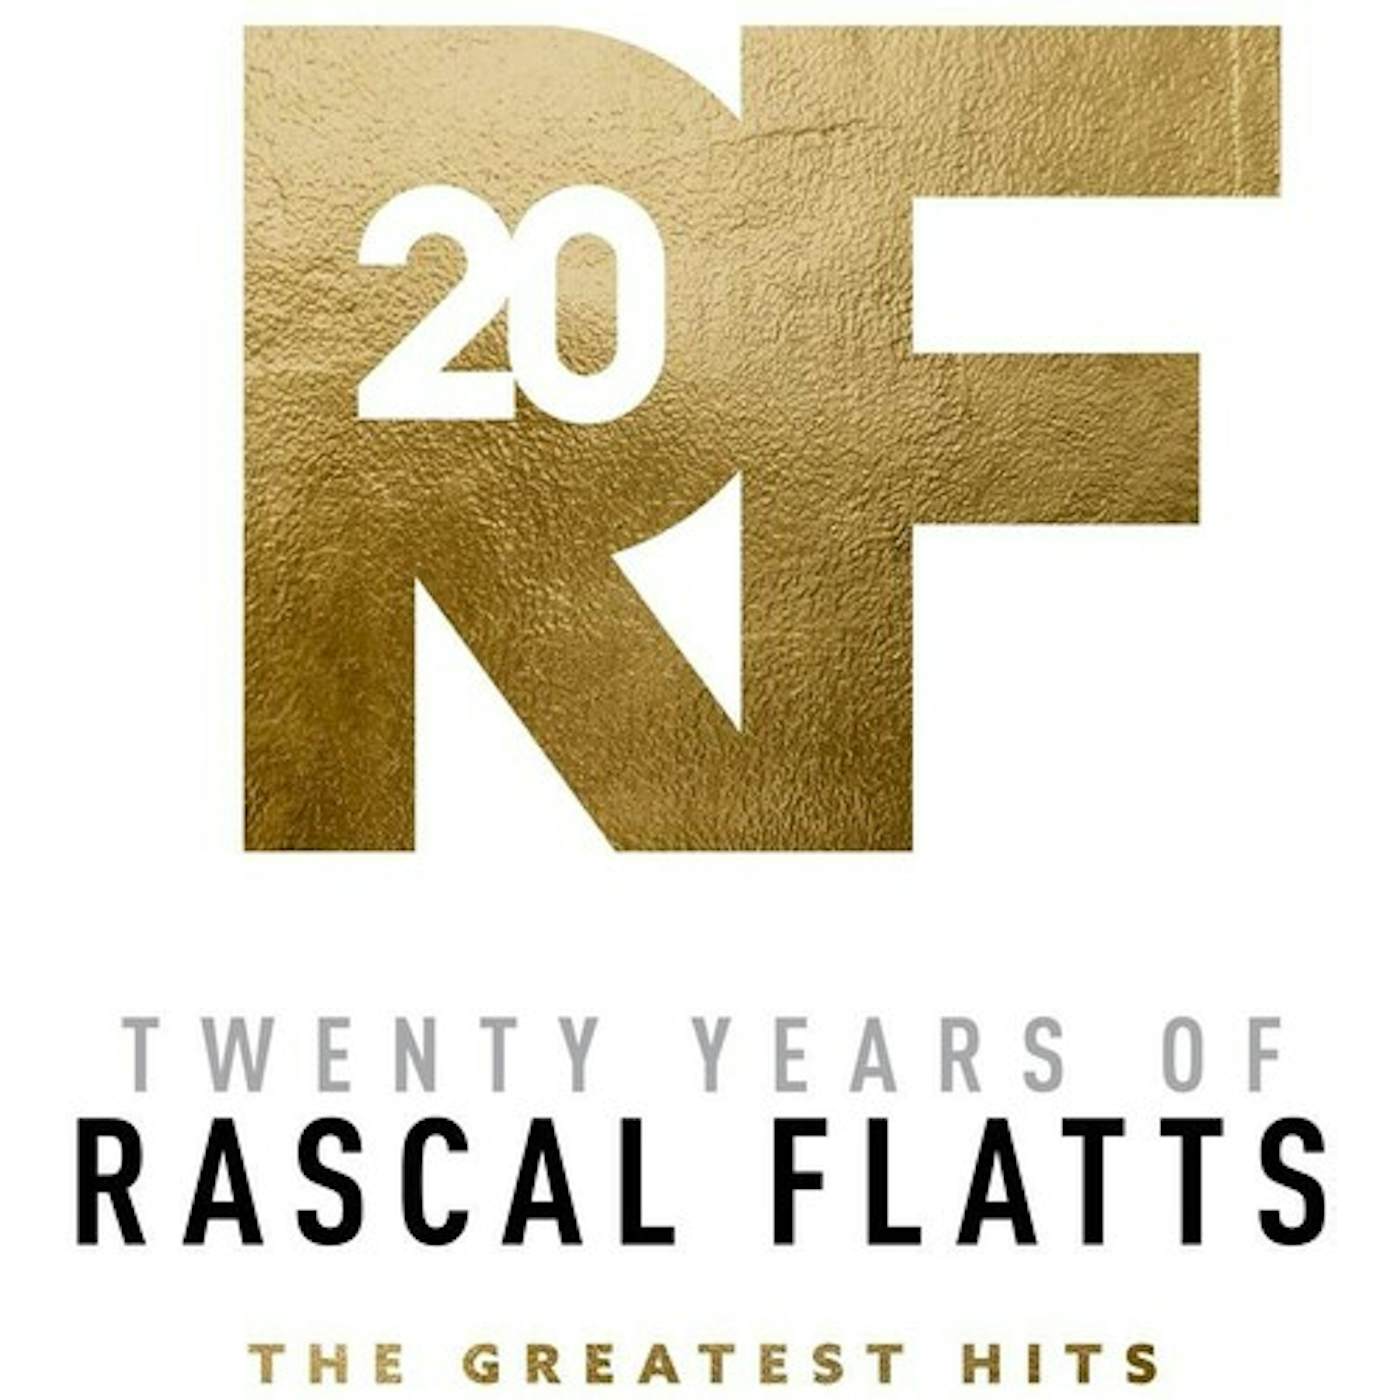 TWENTY YEARS OF RASCAL FLATTS - THE GREATEST HITS CD